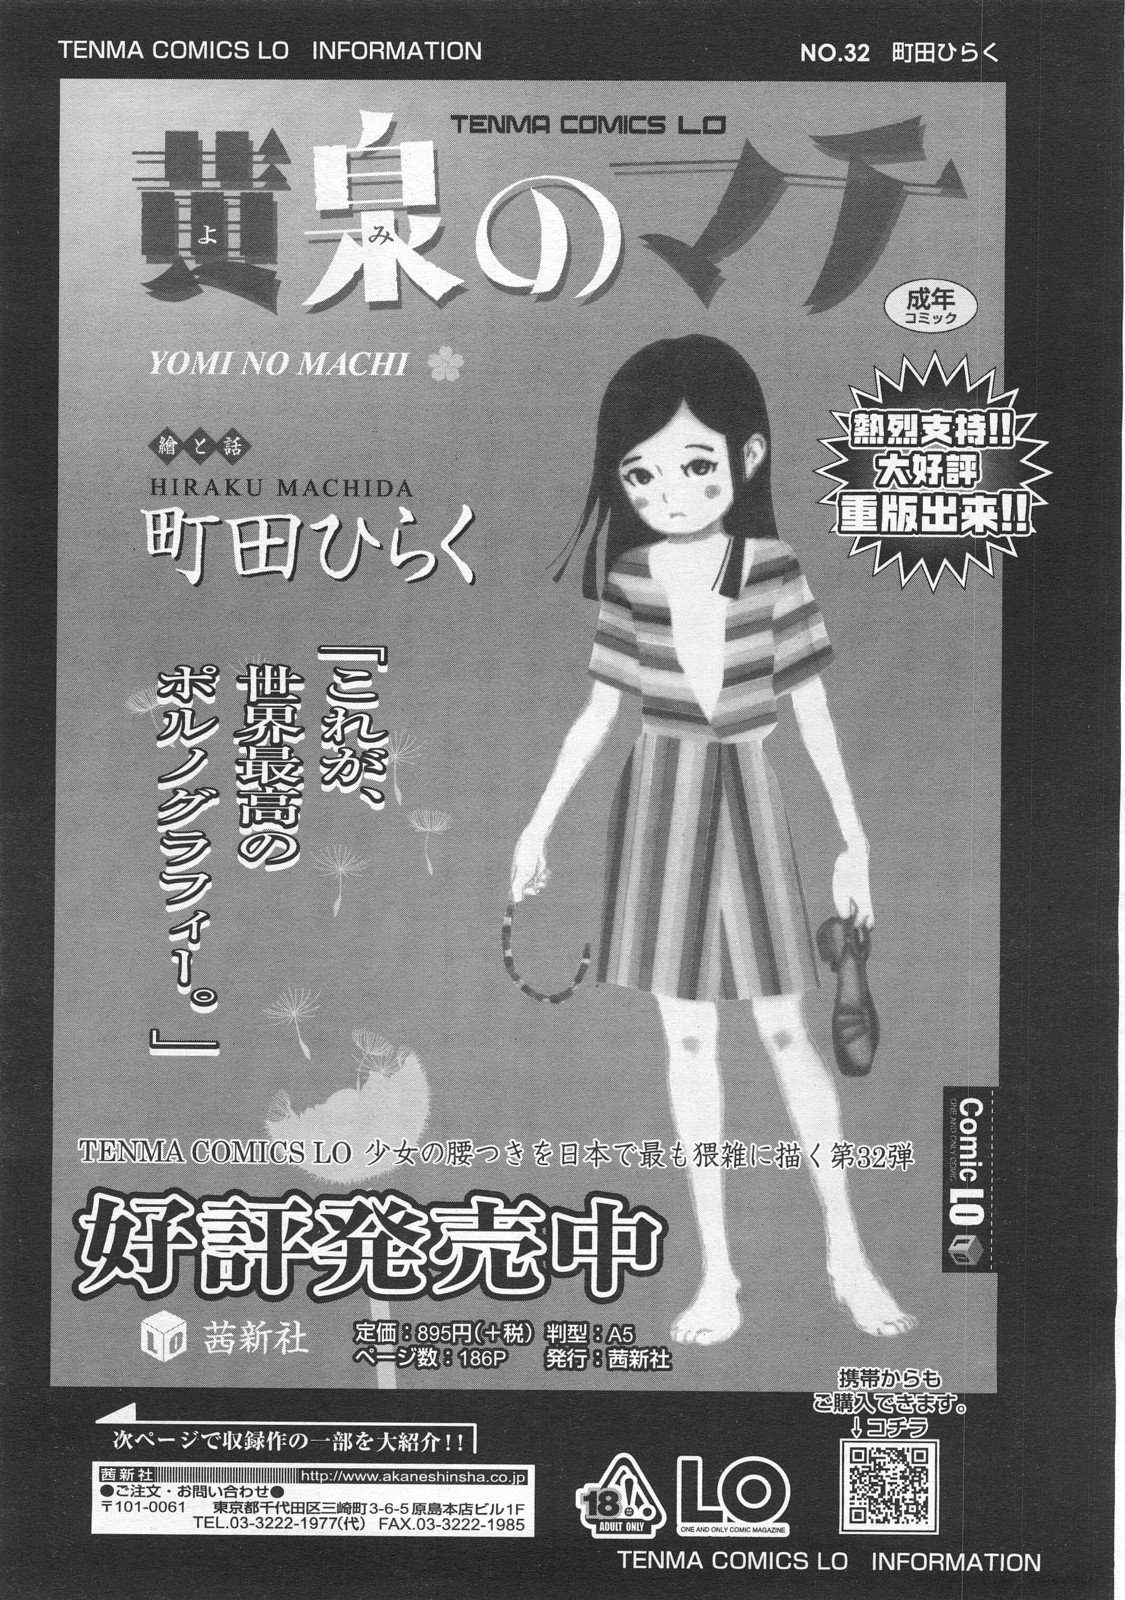 COMIC LO 2008年2月号 Vol.47